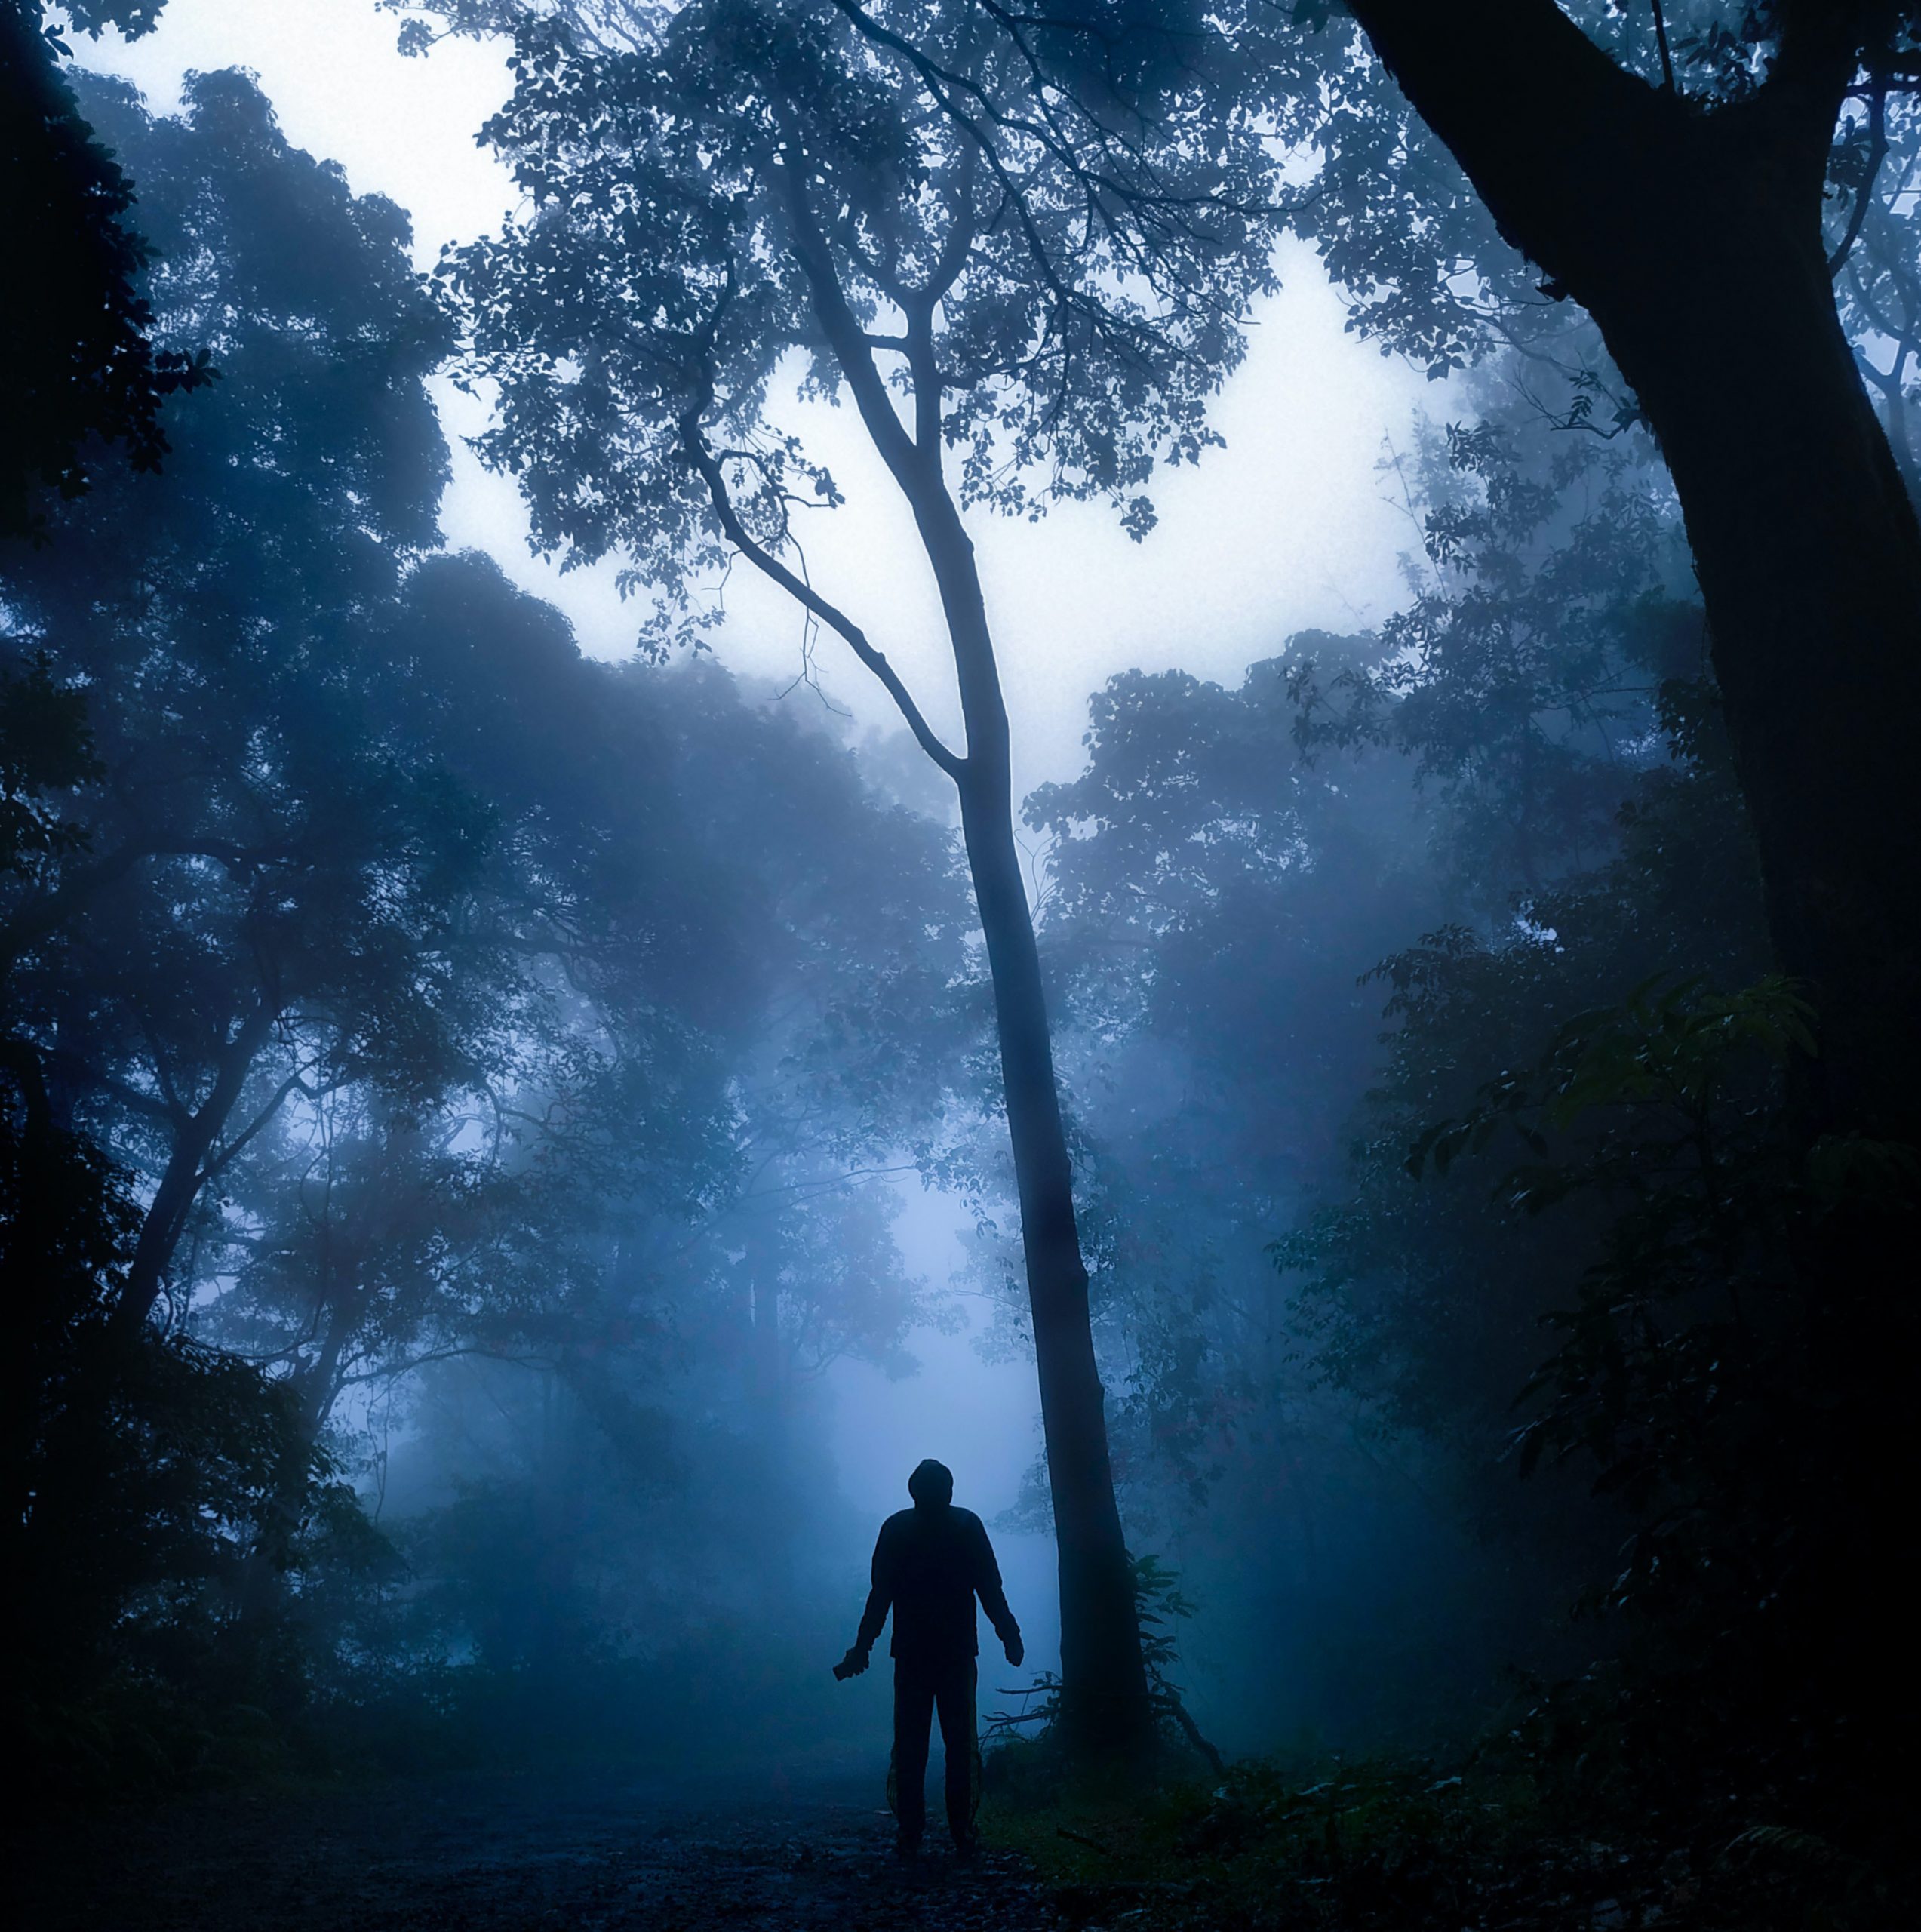 A person in the trees. Photo: Tony Sebastian via Pexels